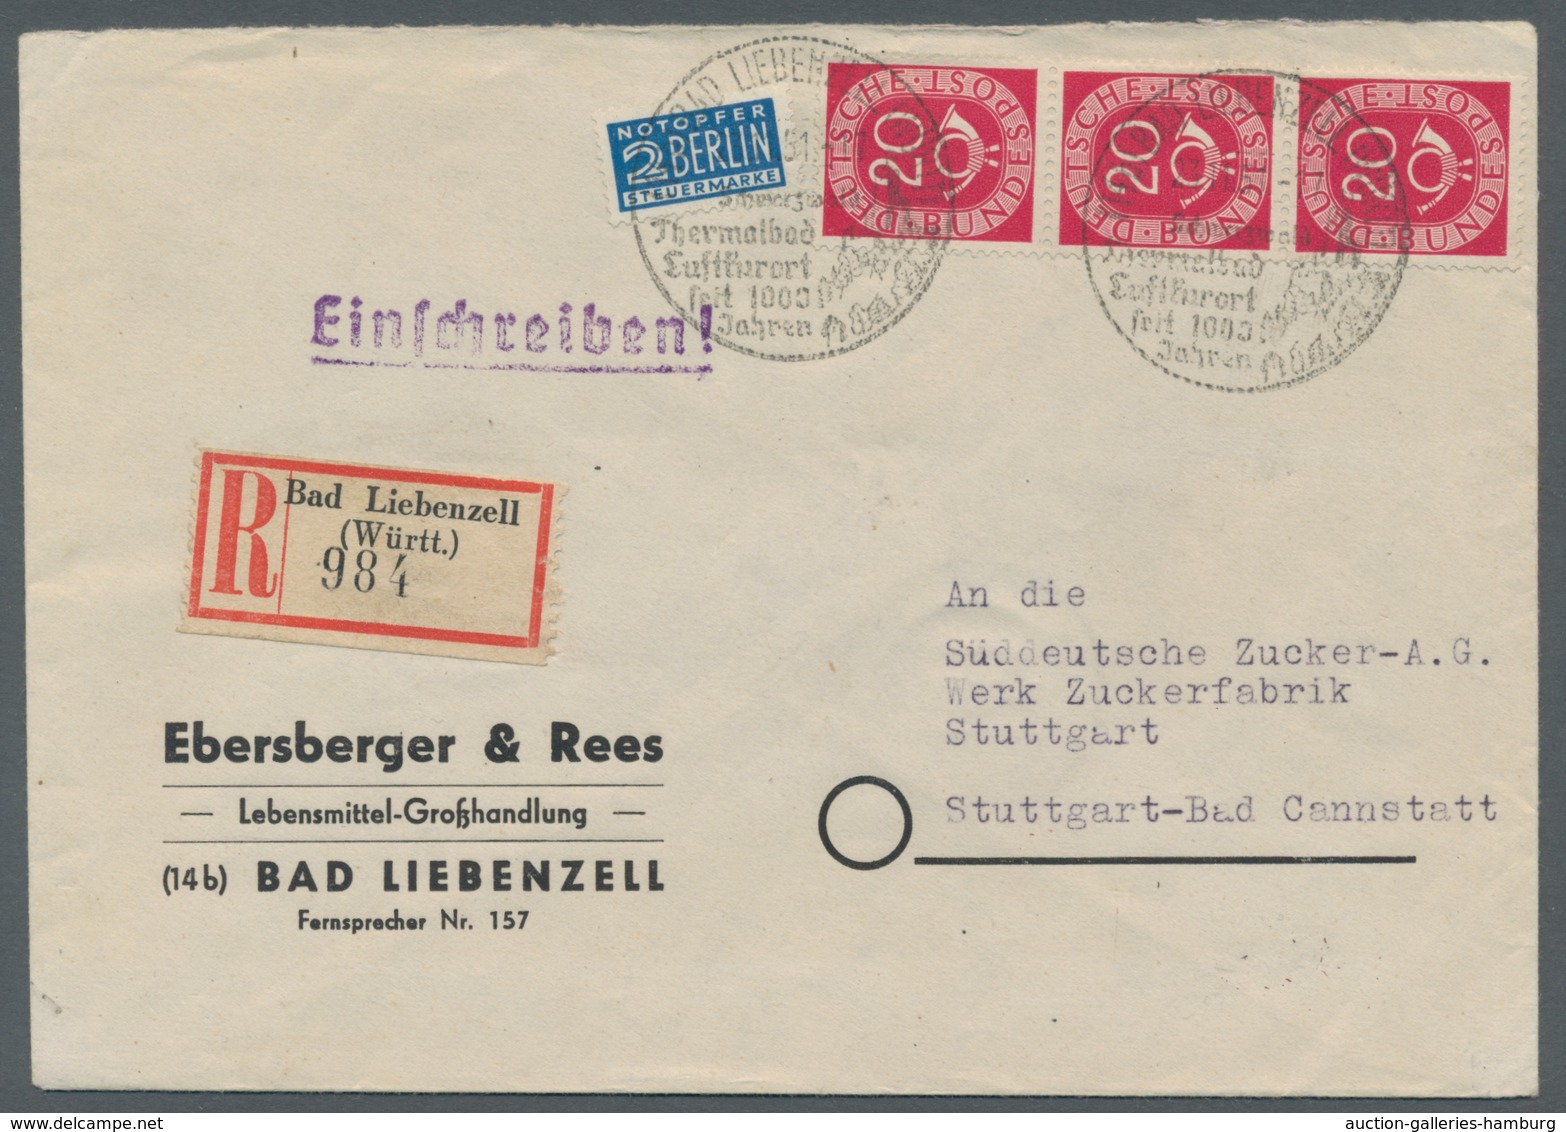 Bundesrepublik Deutschland: 1951-1954, Sammlung von 24 Belegen mit Einheiten der Posthornserie in ei